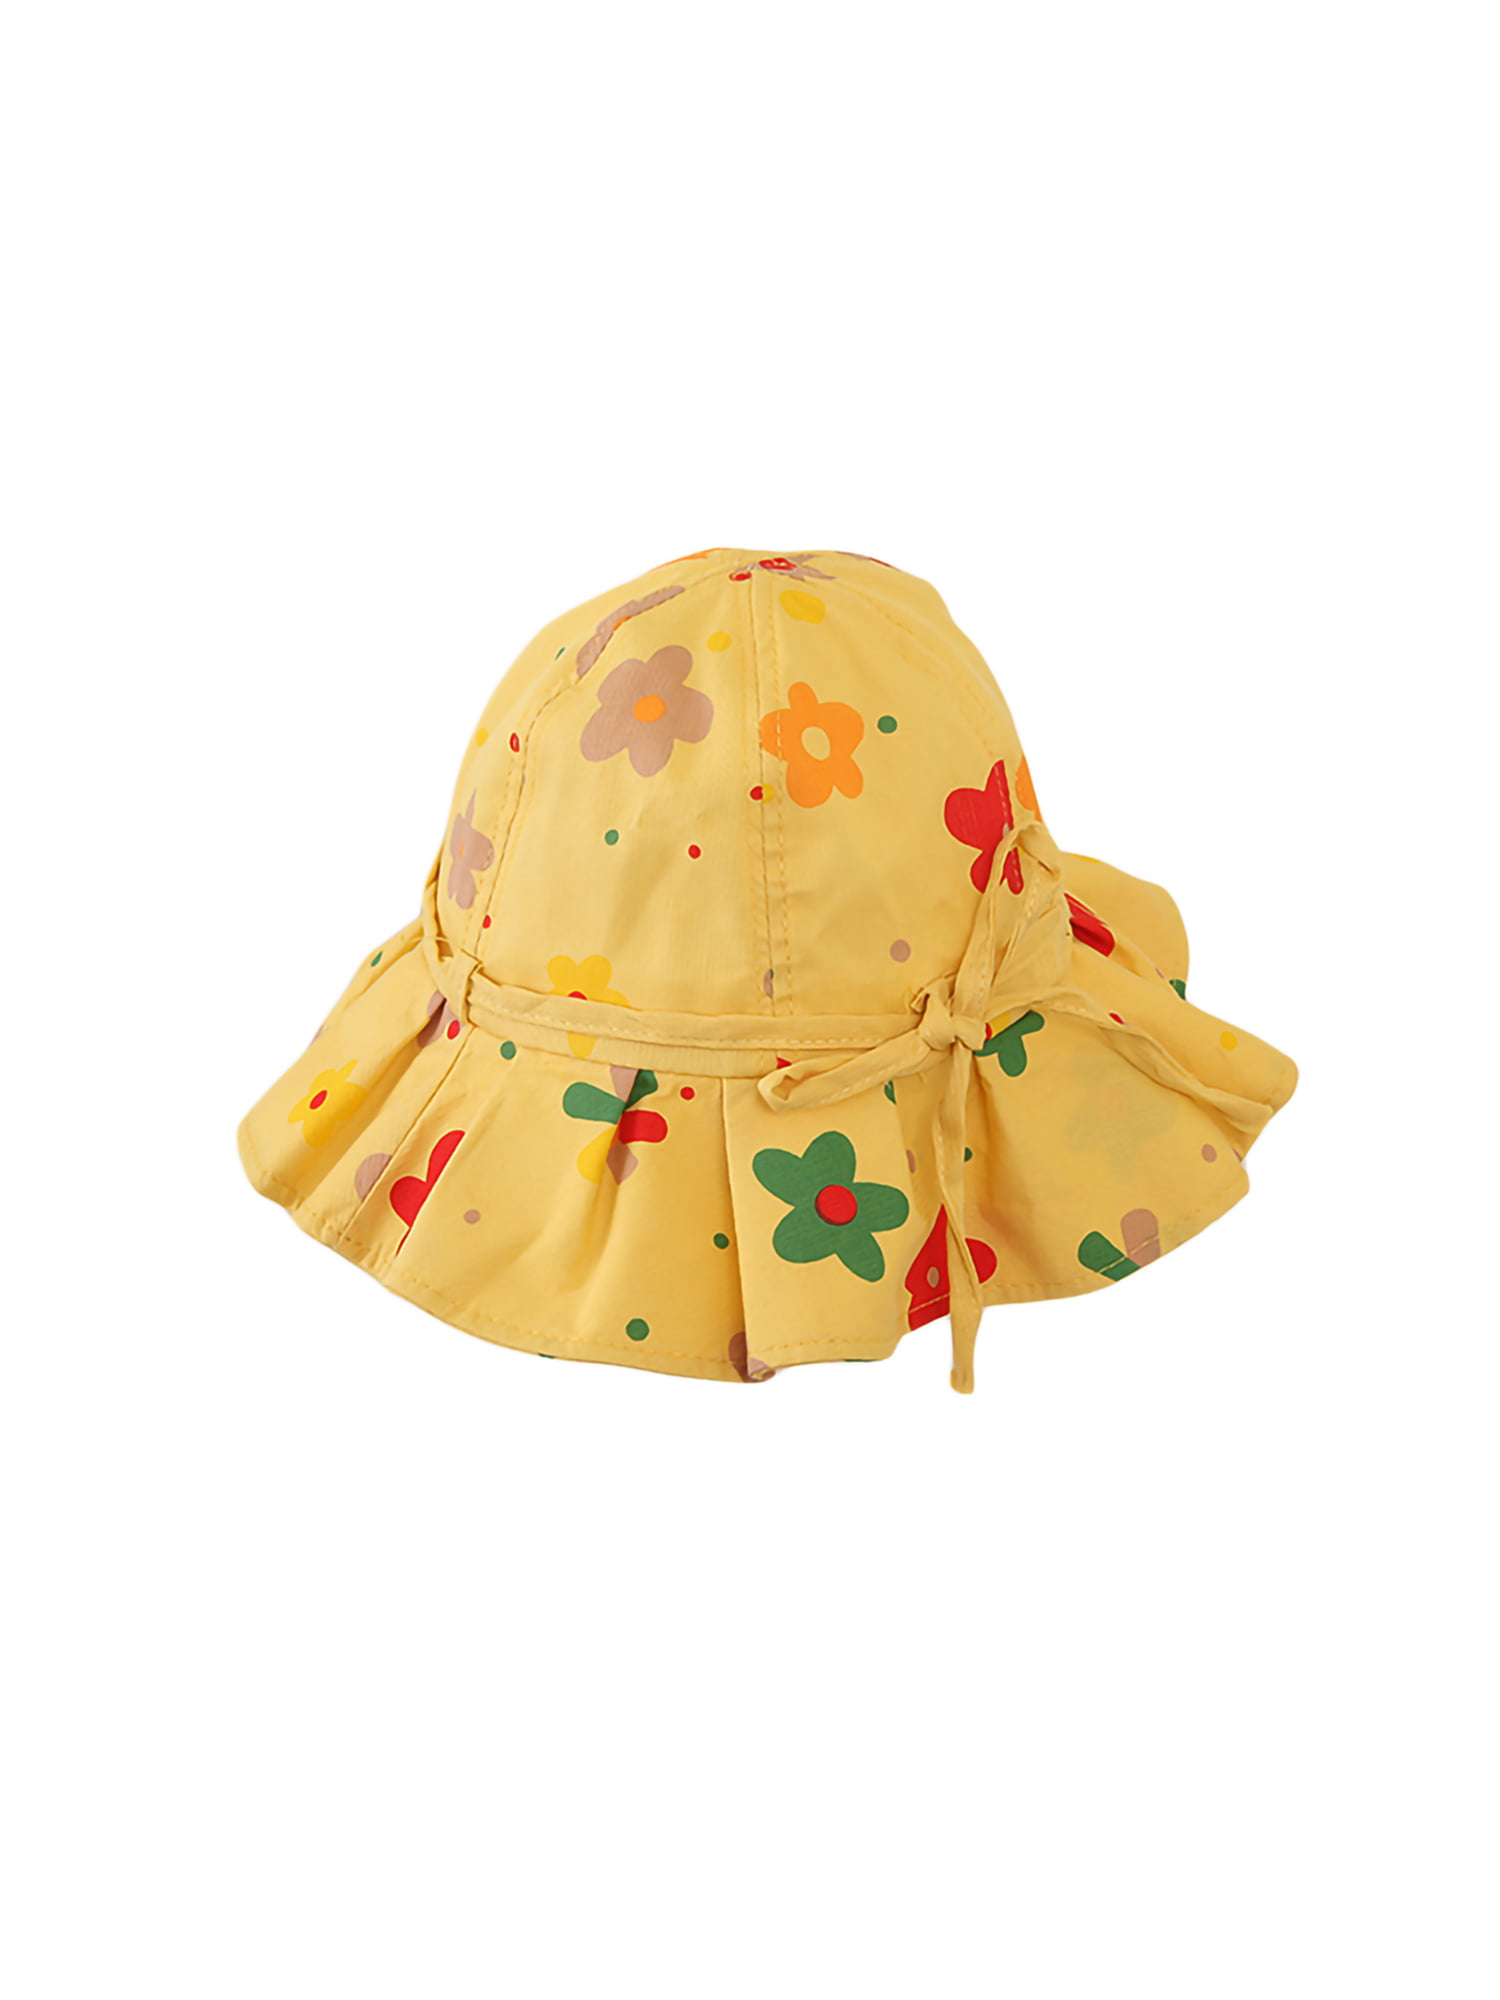 Newborn Baby Girl Summer Sun Hat Bowknot Princess Bonnet Flower Beach Bucket Cap